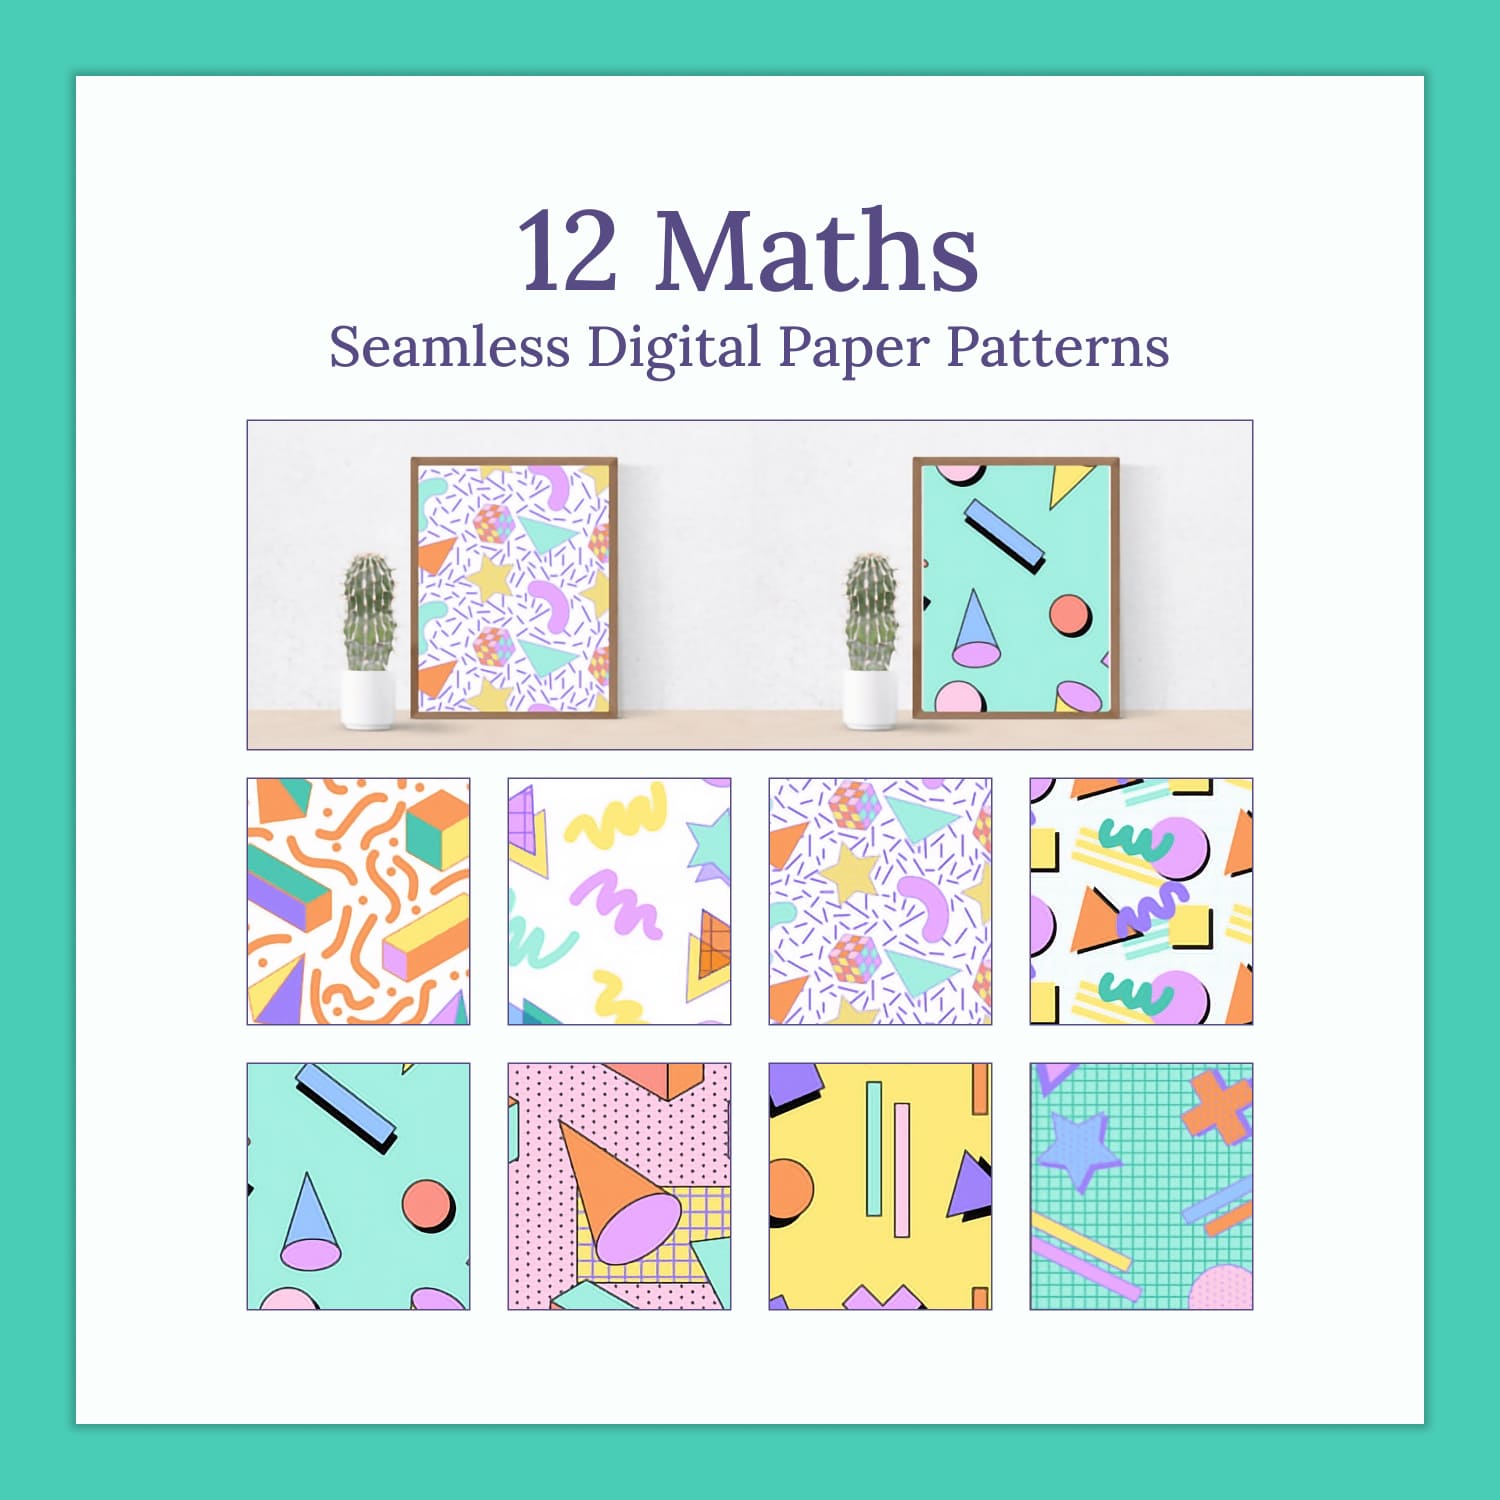 12 Maths Seamless Digital Paper Patterns.